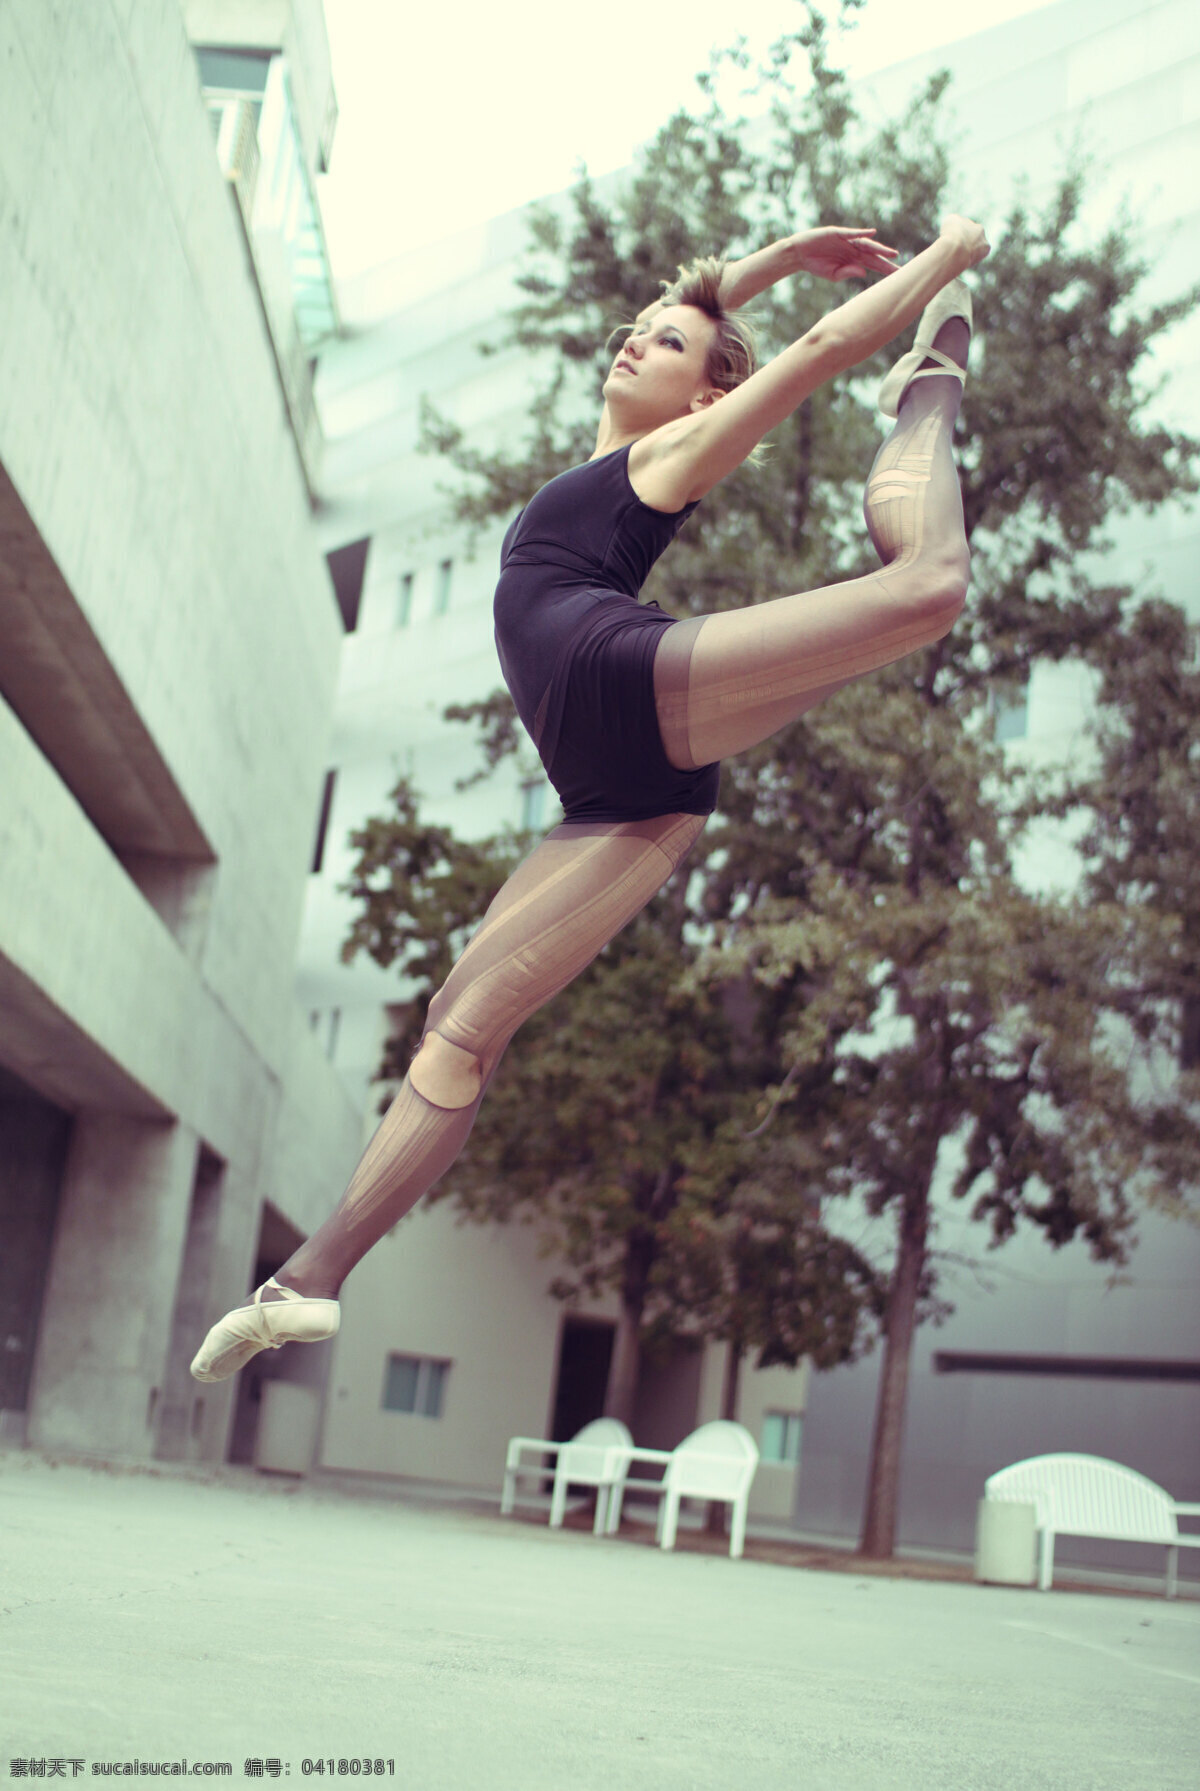 舞者 舞蹈 舞姿 舞鞋 女性 室外 芭蕾 ballet 艺术 西方 造型 特写 跳跃 jump leap 树木 建筑 舞蹈音乐 文化艺术